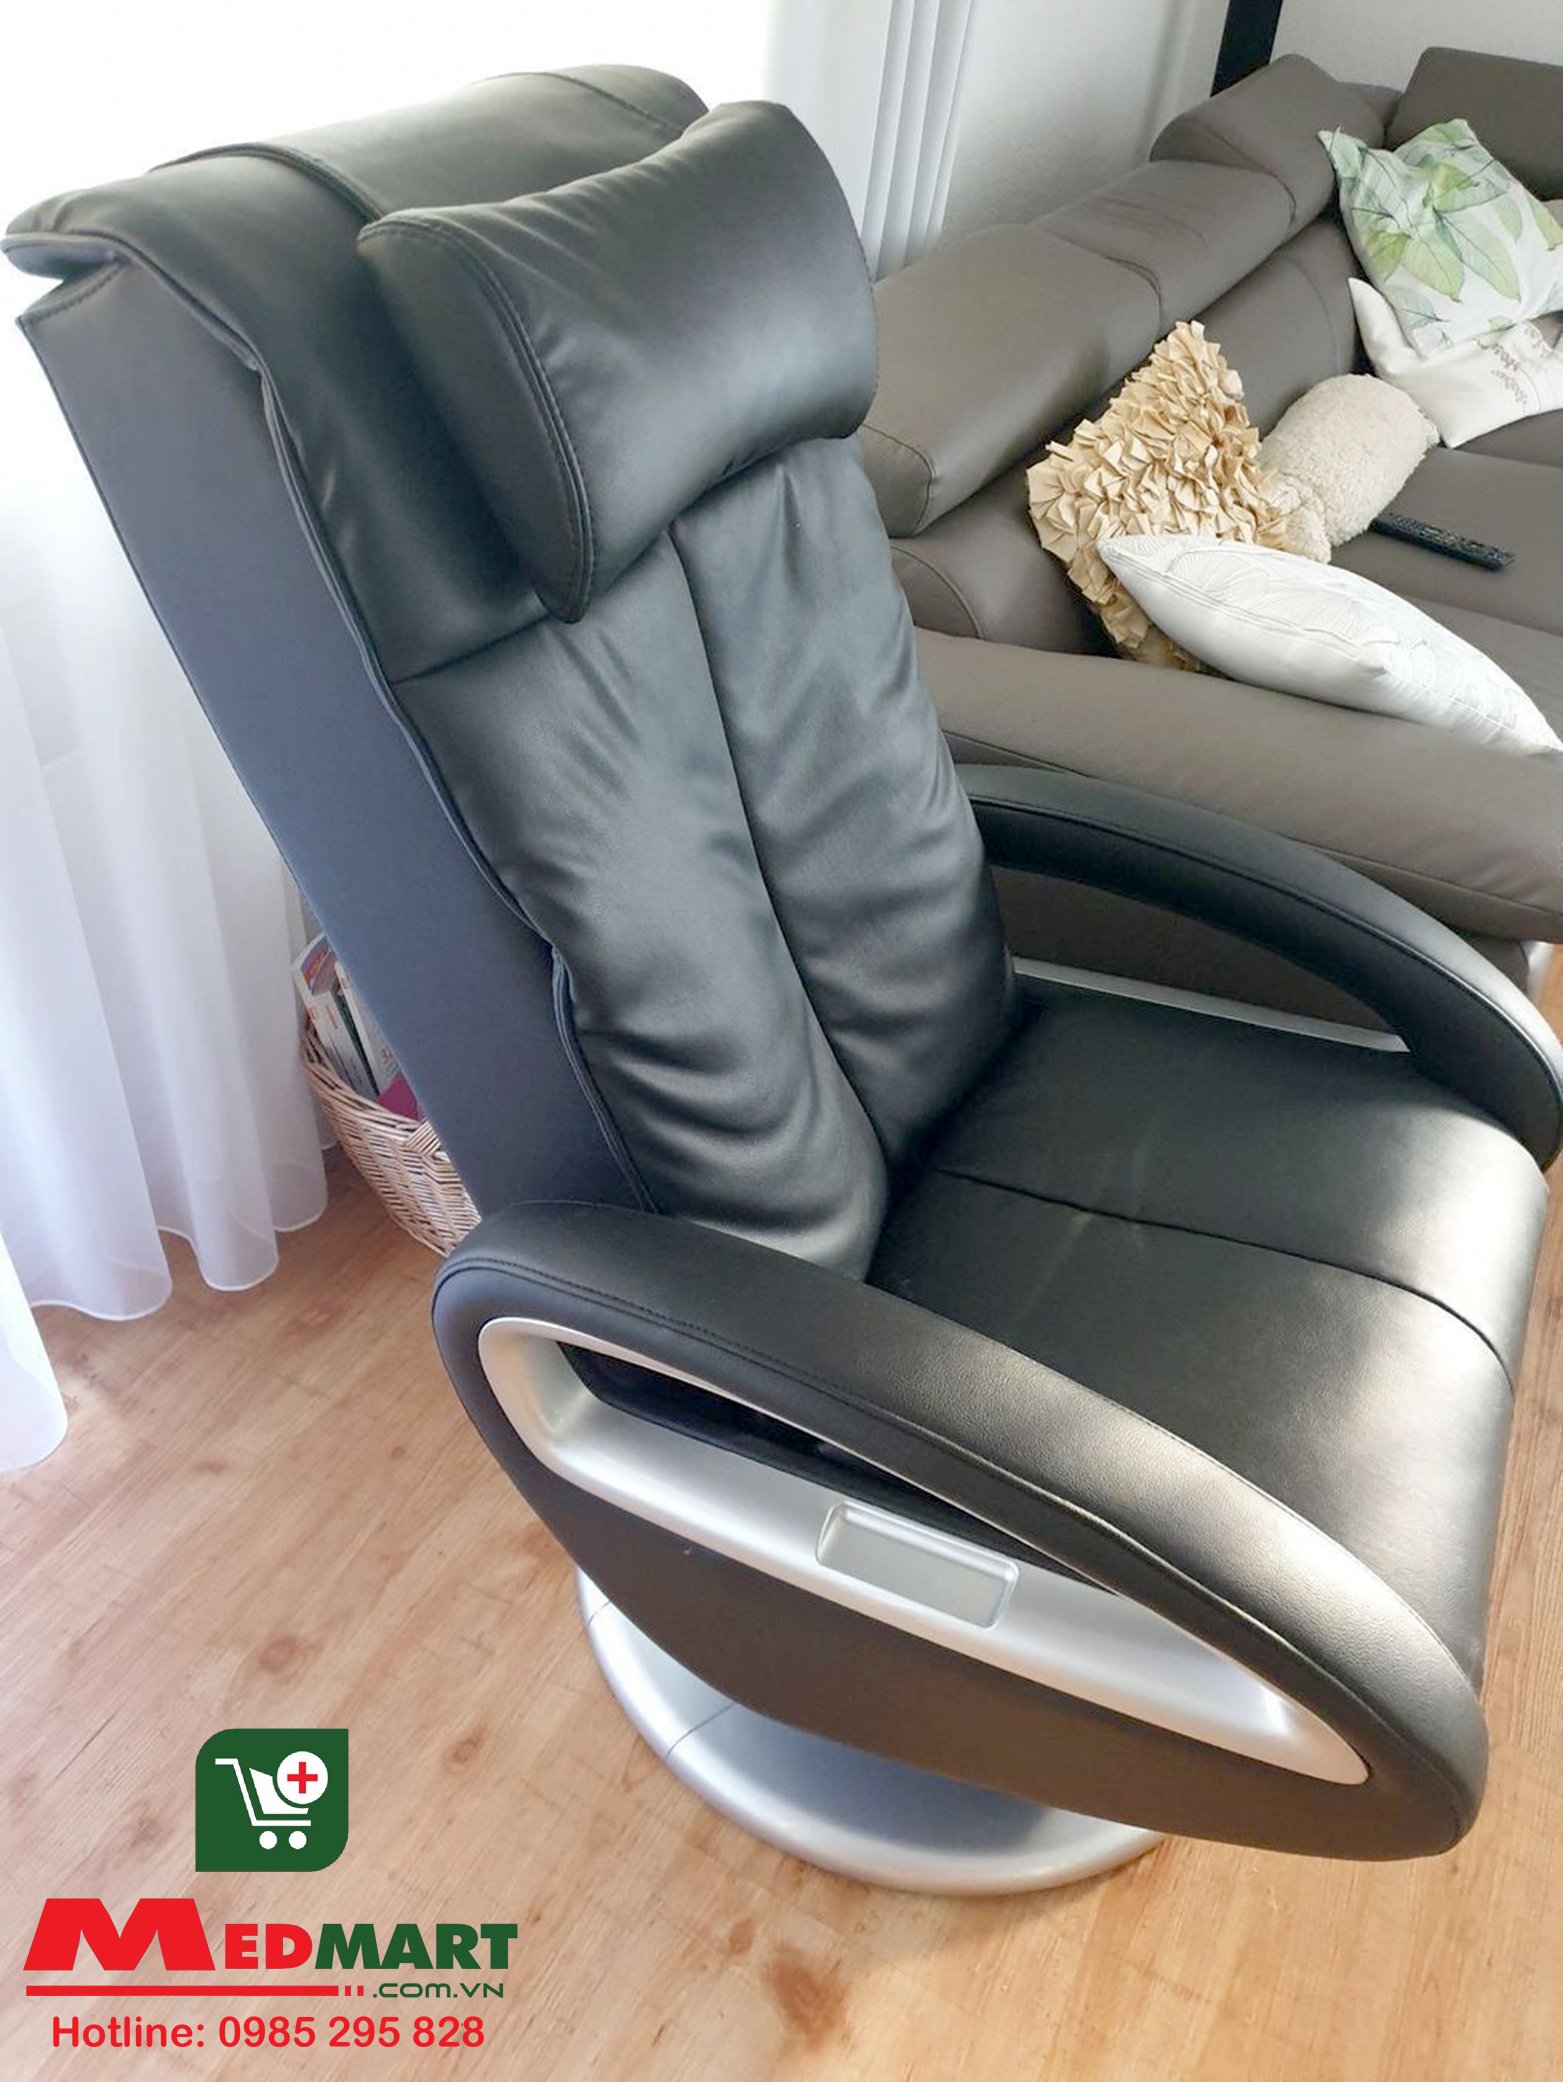 Ghế massage toàn thân Beurer MC3800 dễ dàng điều chỉnh nâng/ hạ tựa lưng và tựa chân dễ dàng.